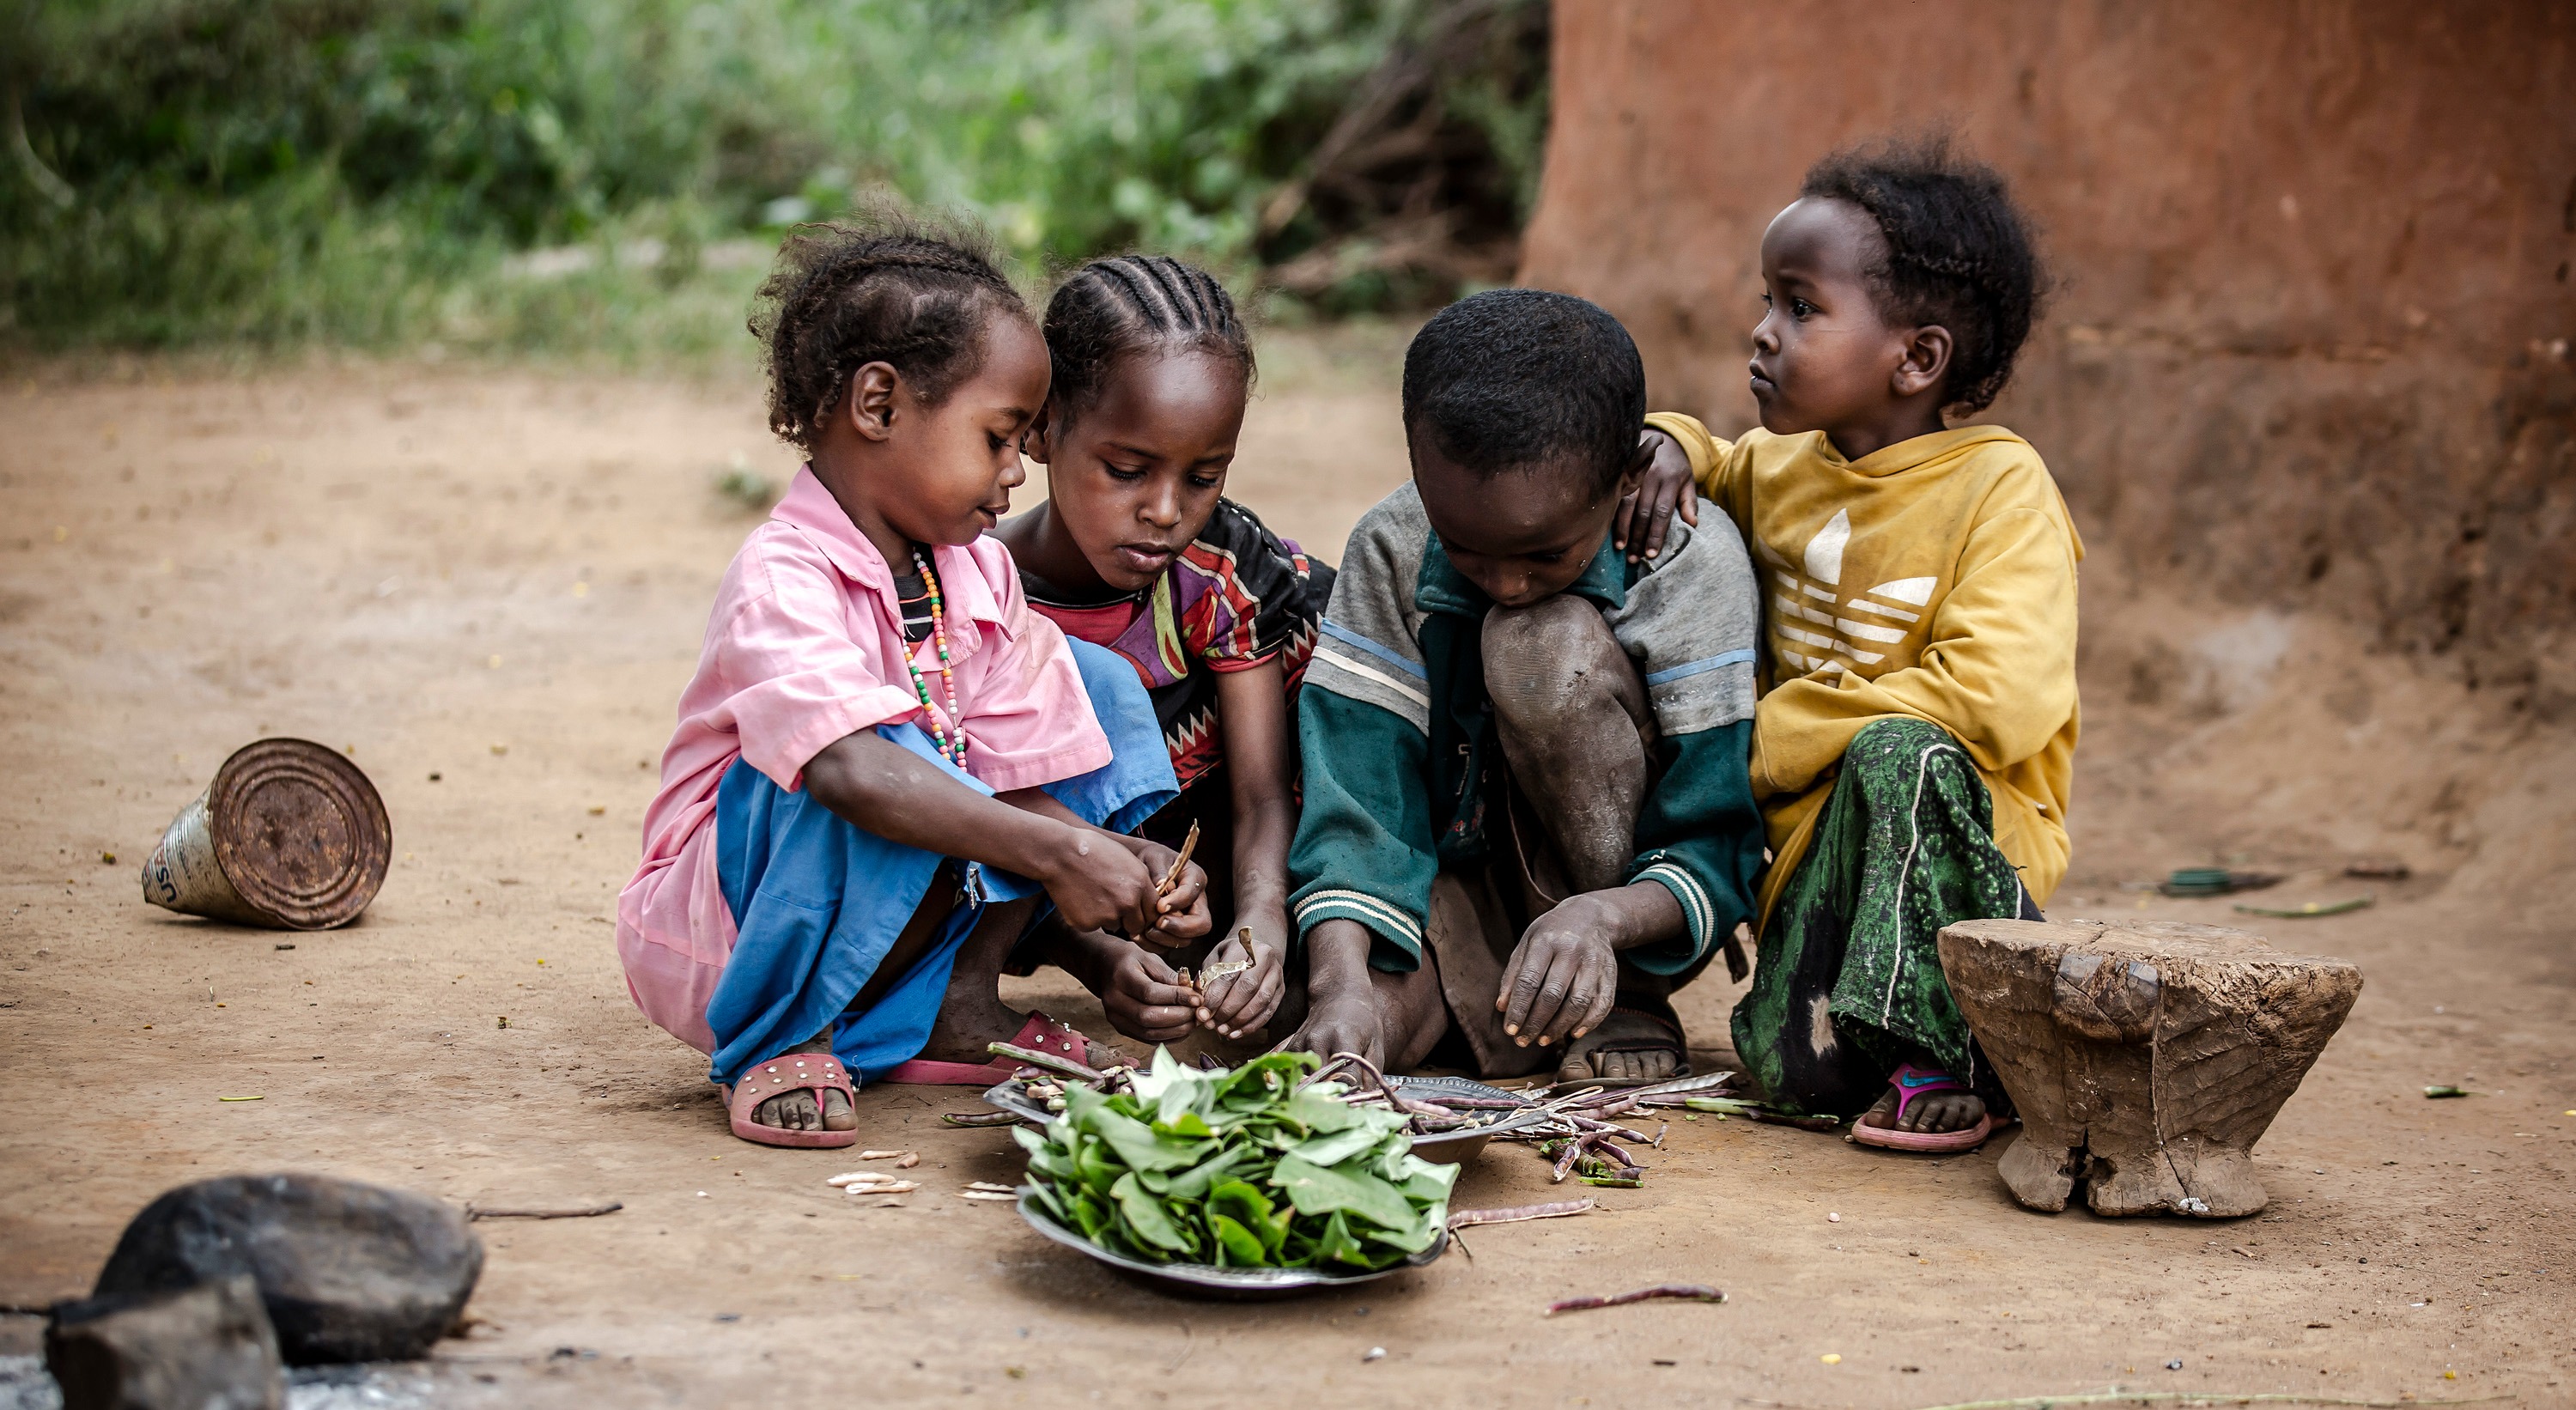 لا بدّ من اتخاذ إجراءات عاجلة في ظل تهديد سوء التغذية الحاد لحياة الملايين  من الأطفال الضعفاء